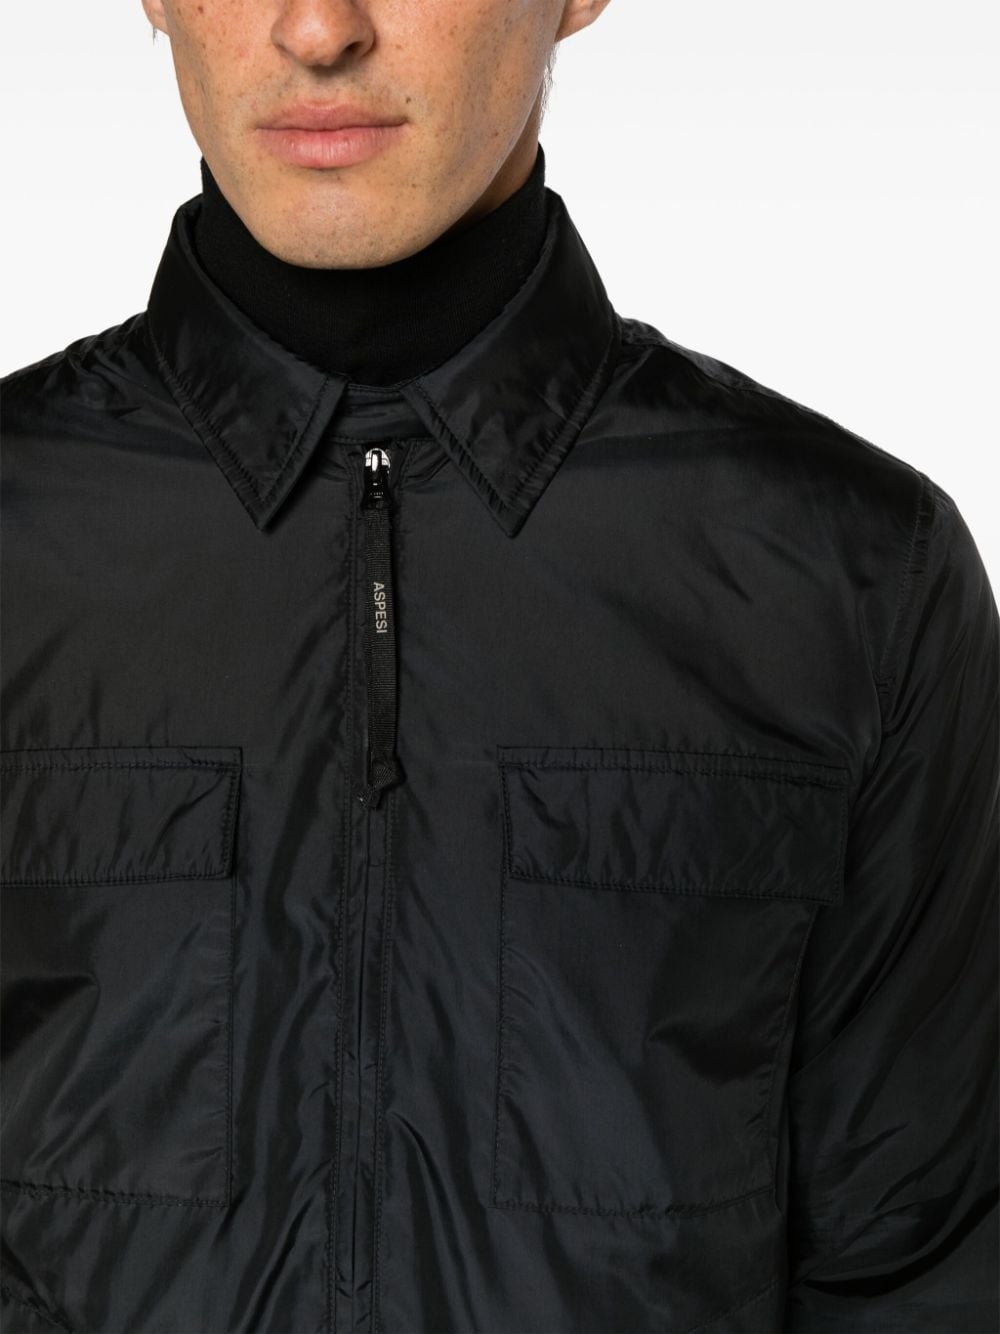 Compton zip-up lightweight jacket - 5